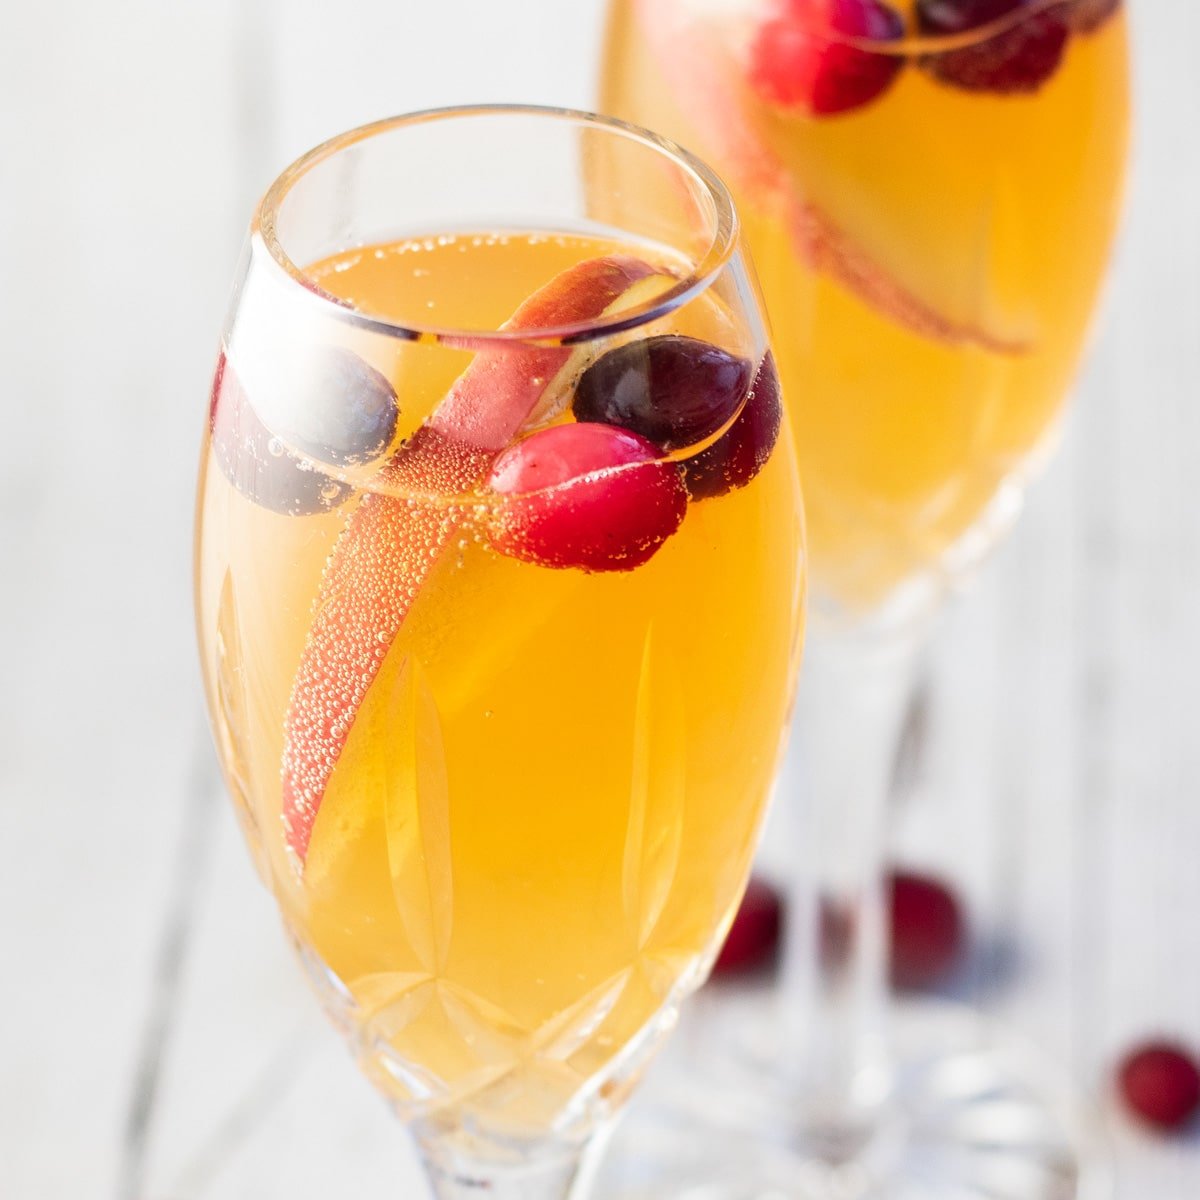 Безалкогольные коктейли из мимозы в бокалах для шампанского с гарниром из нарезанного яблока и клюквы.